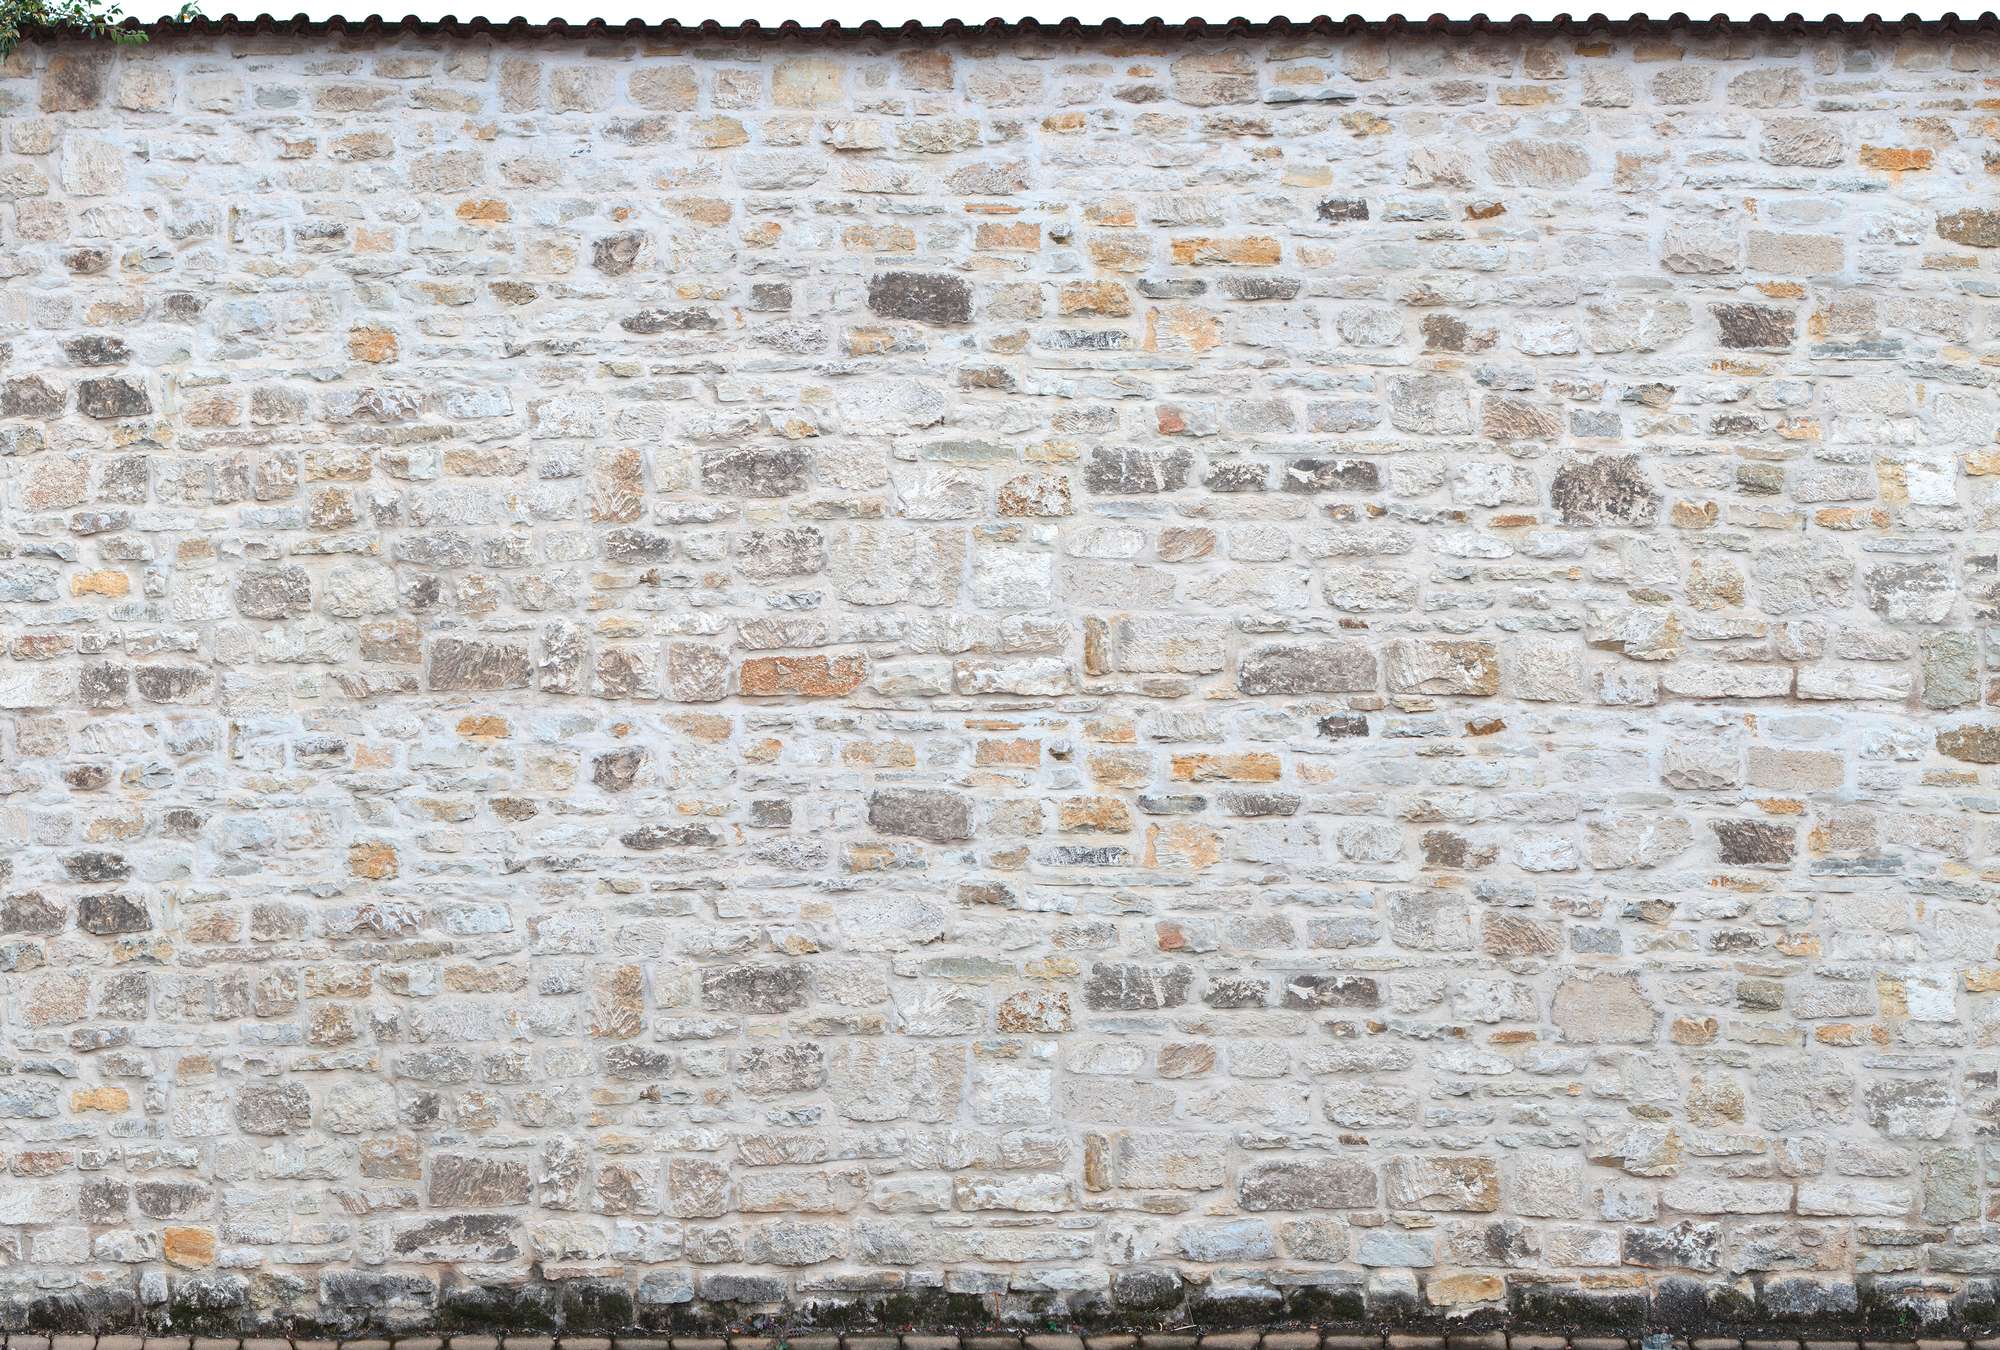             Fototapete im Landhausstil – Natursteinmauer
        